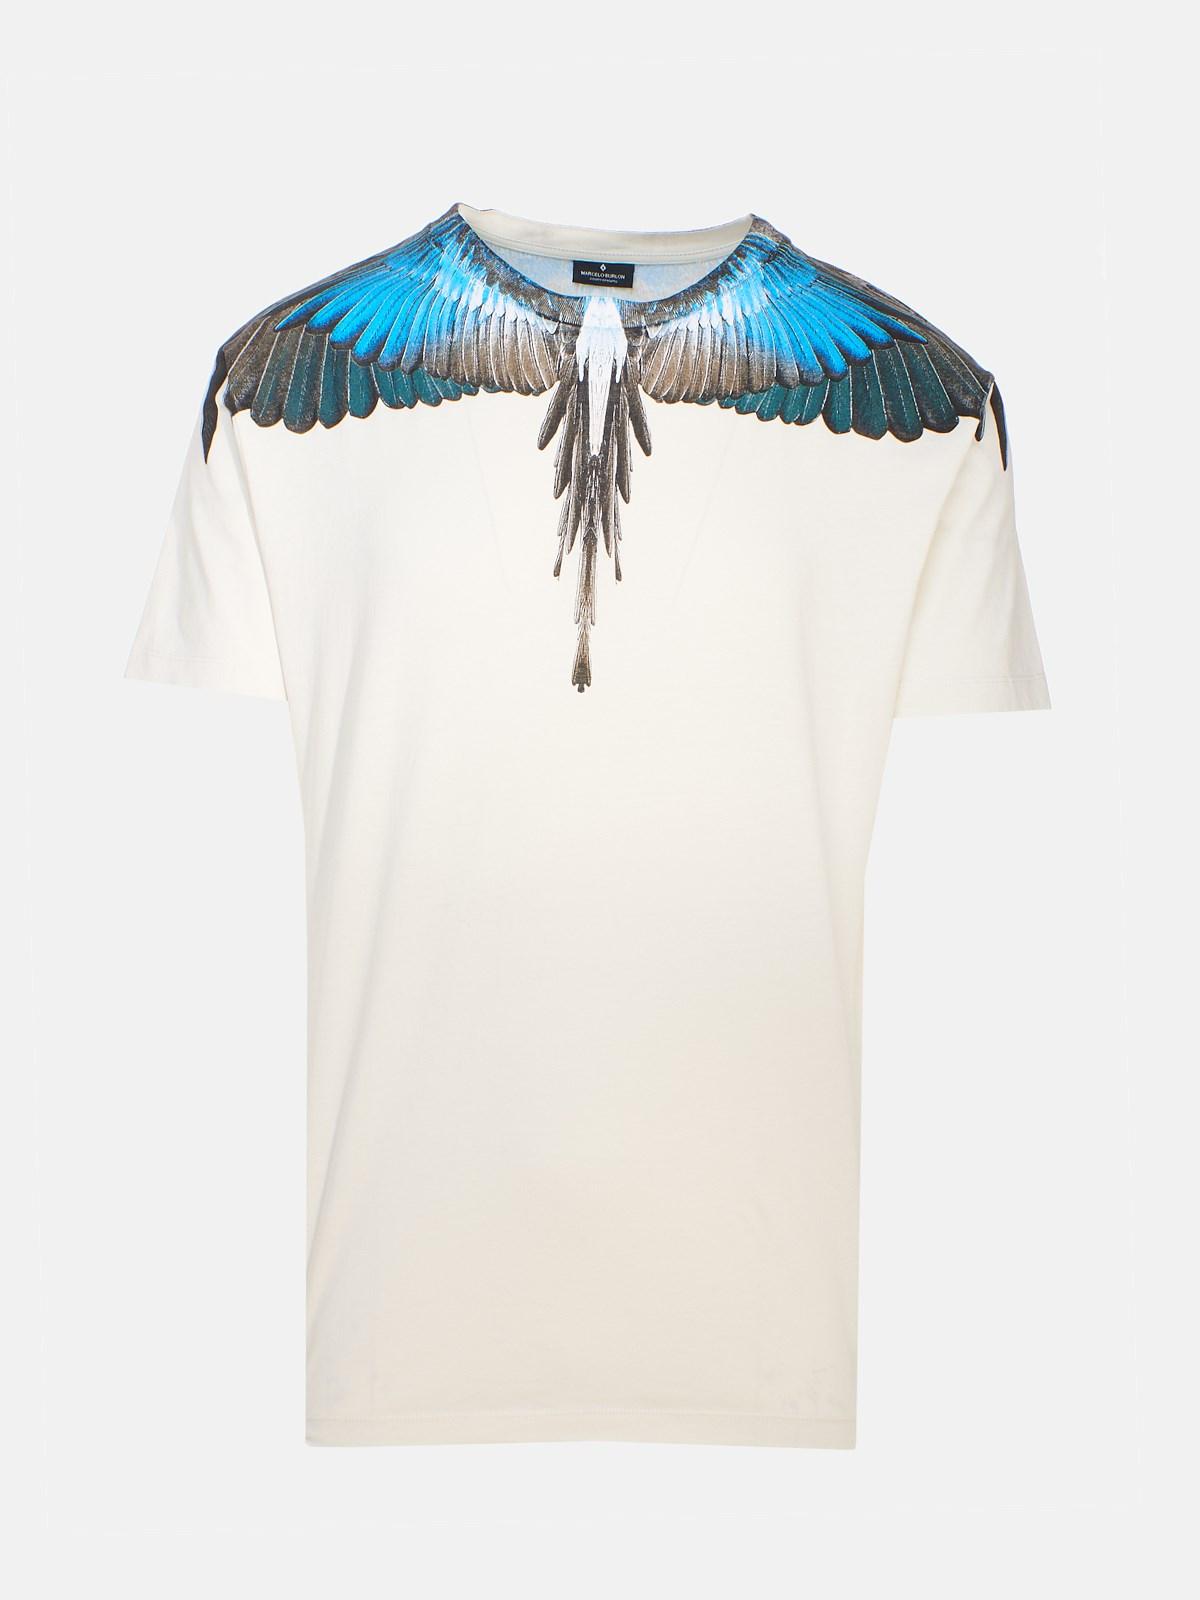 Marcelo Burlon Ivory Wings T-shirt in White for Men - Lyst